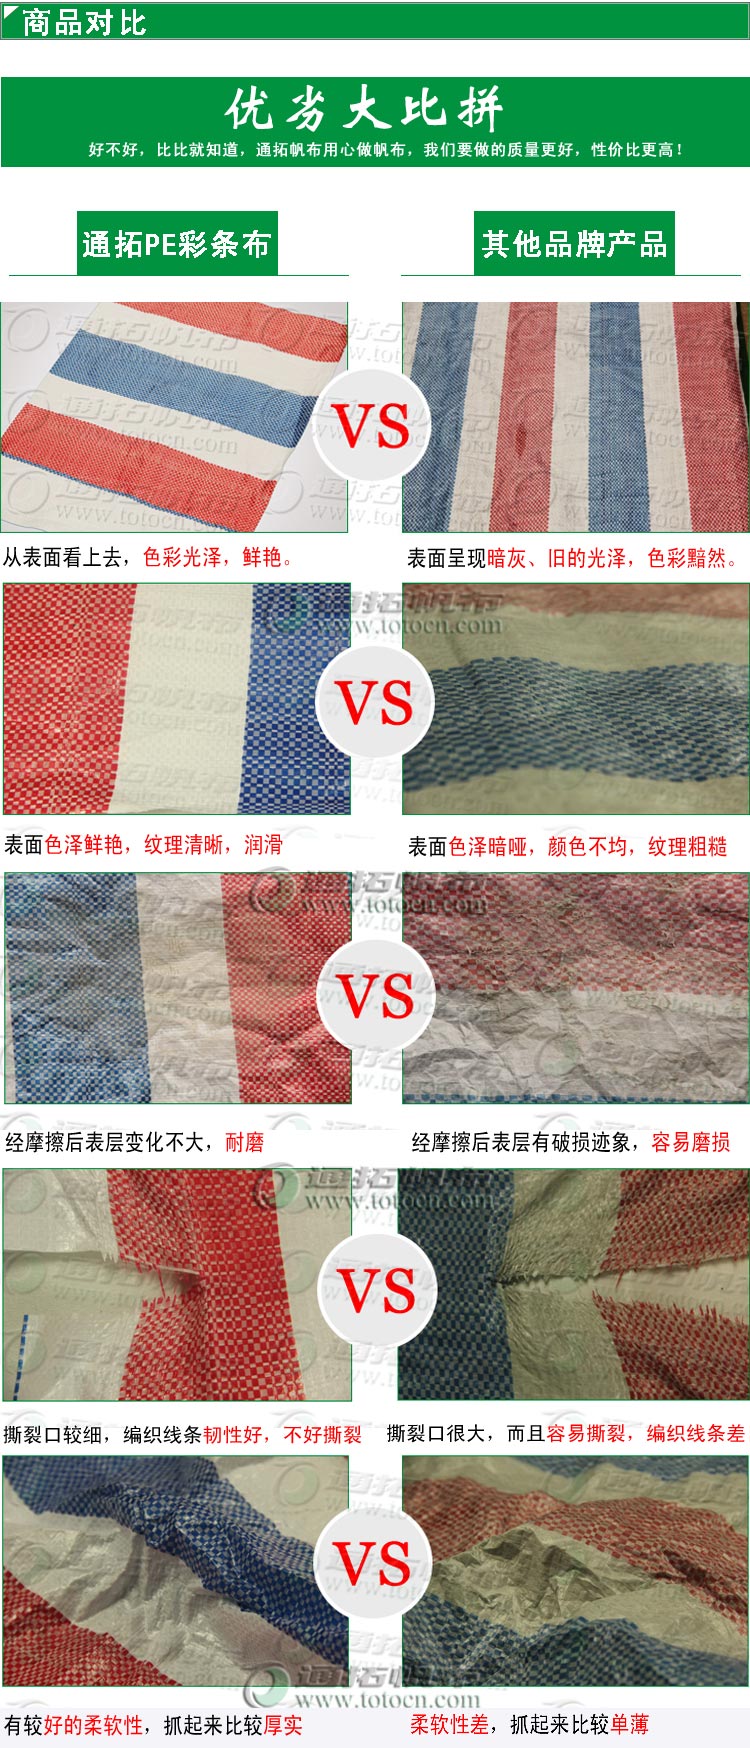 特价“防水帆布”中山防水帆布差异化对比解析信息